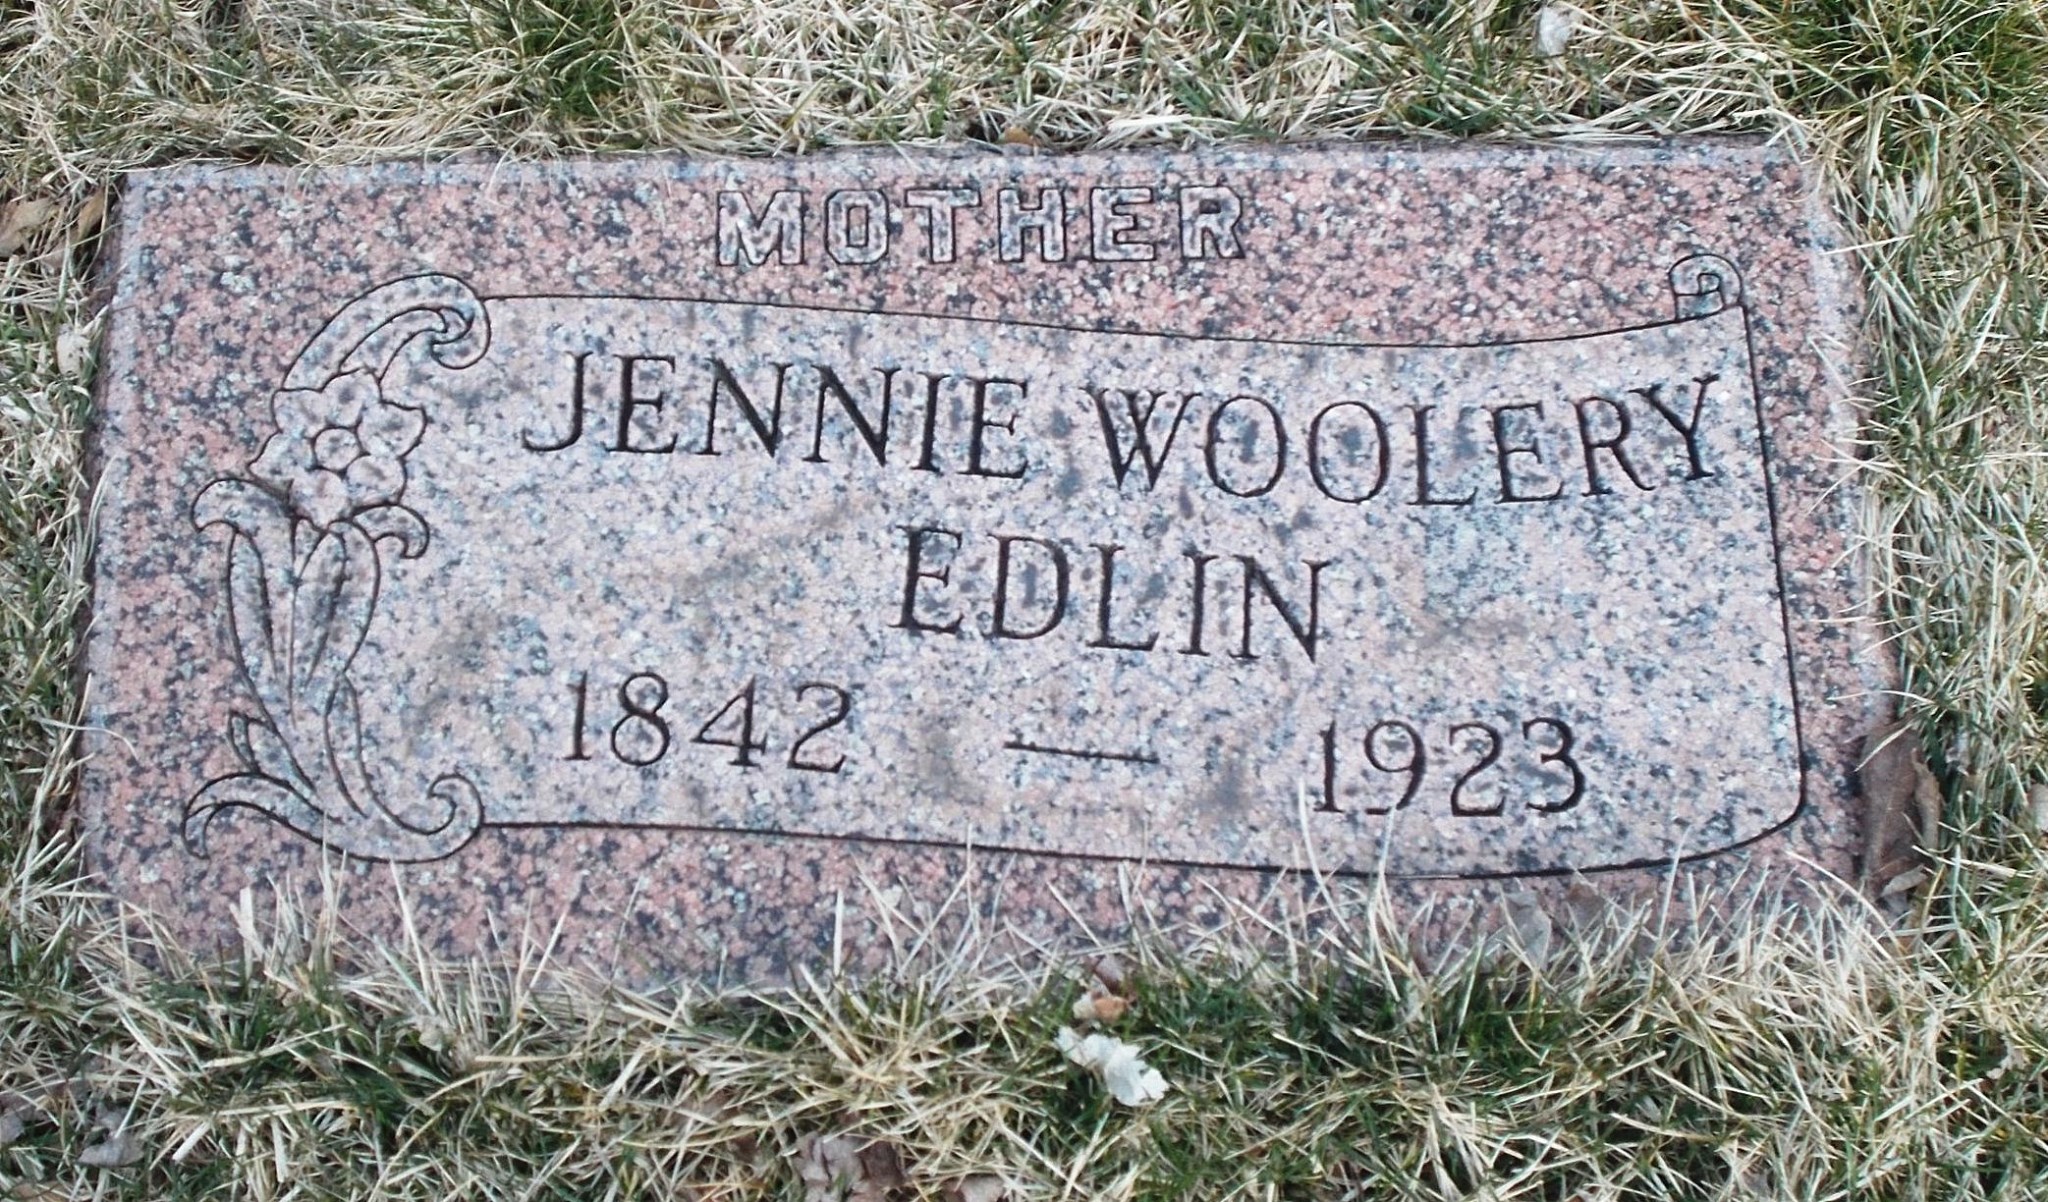 Jennie Woolery Edlin